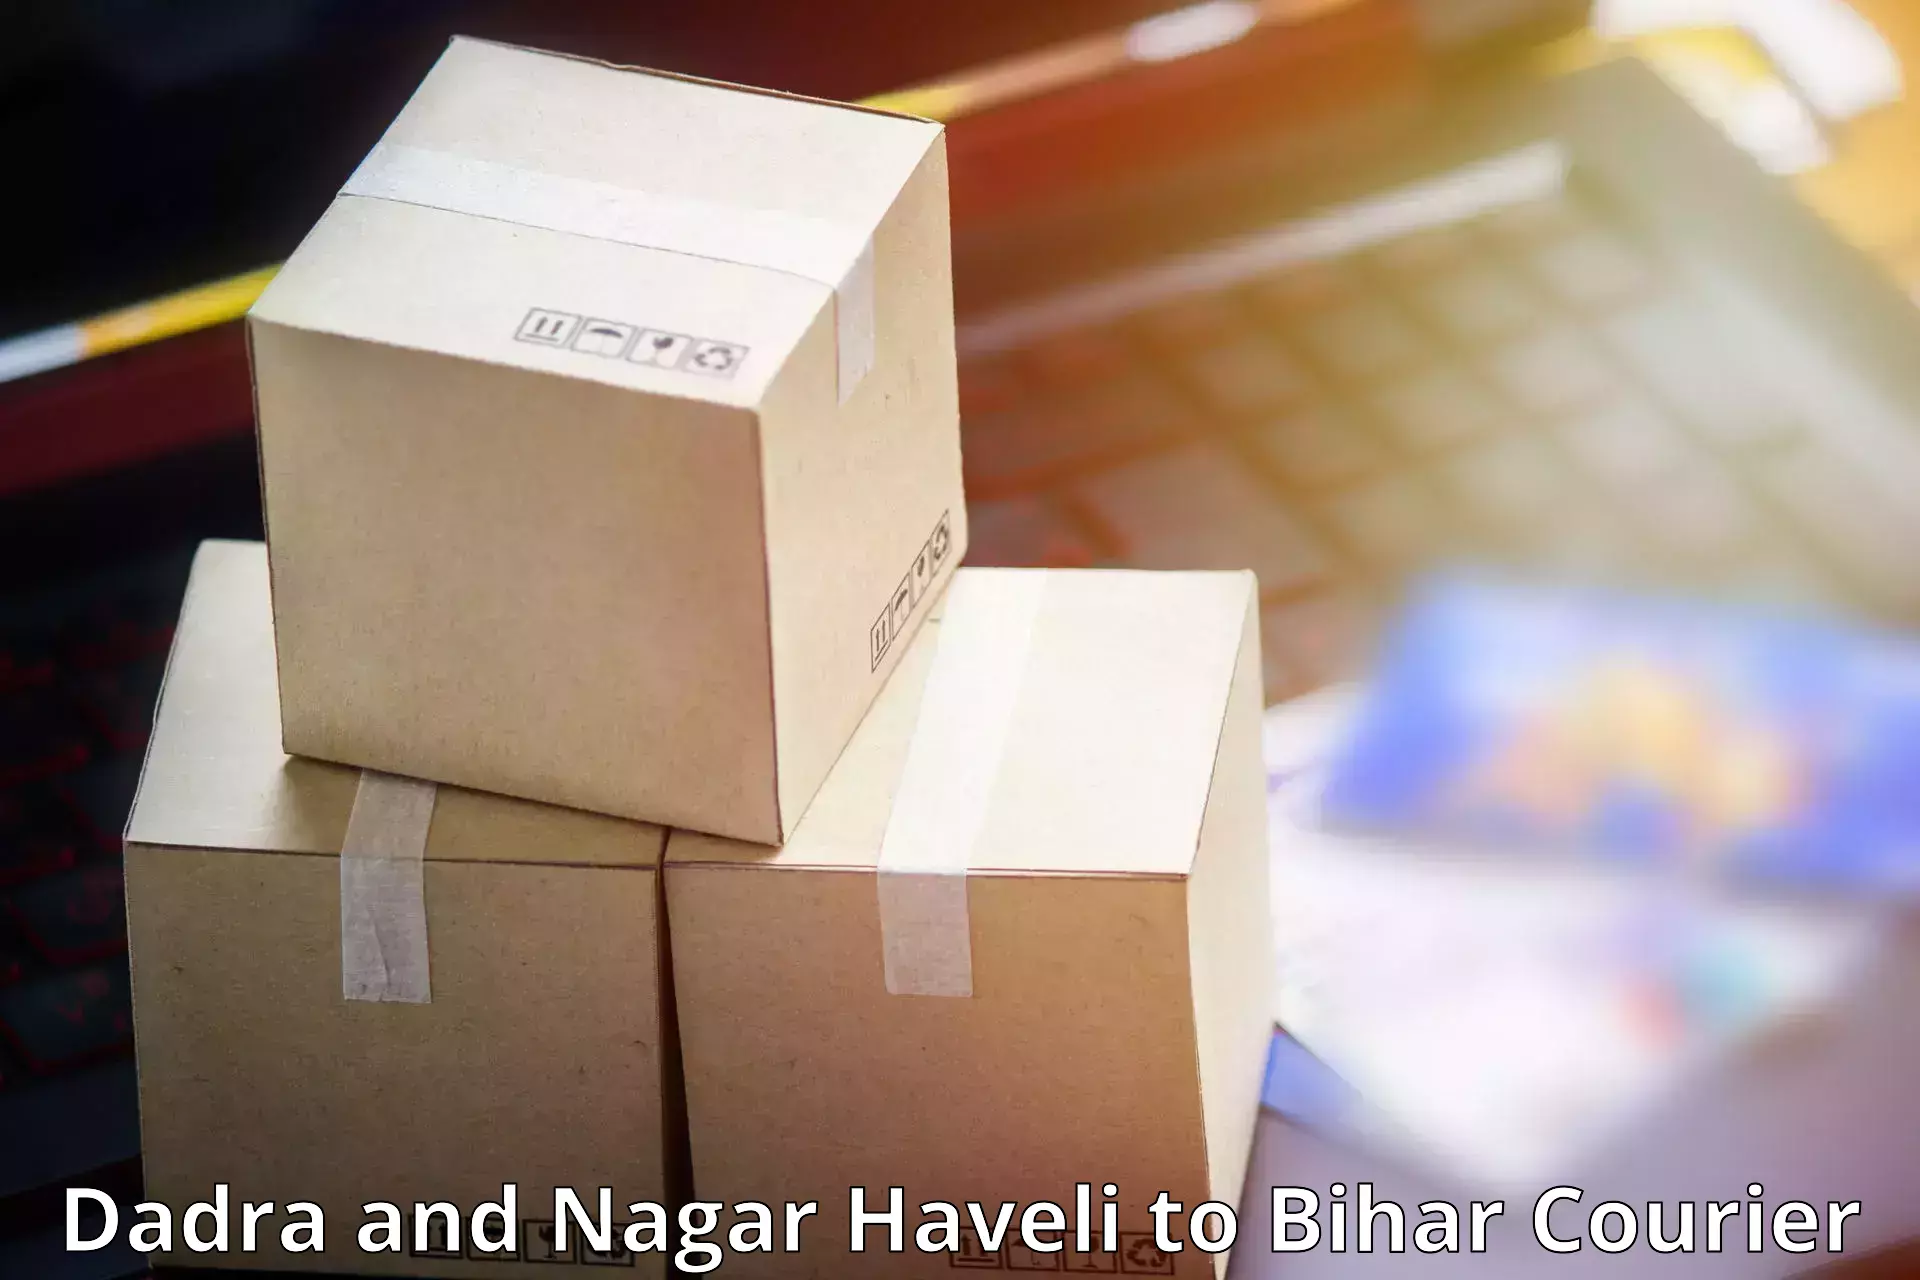 Express logistics service Dadra and Nagar Haveli to Buxar